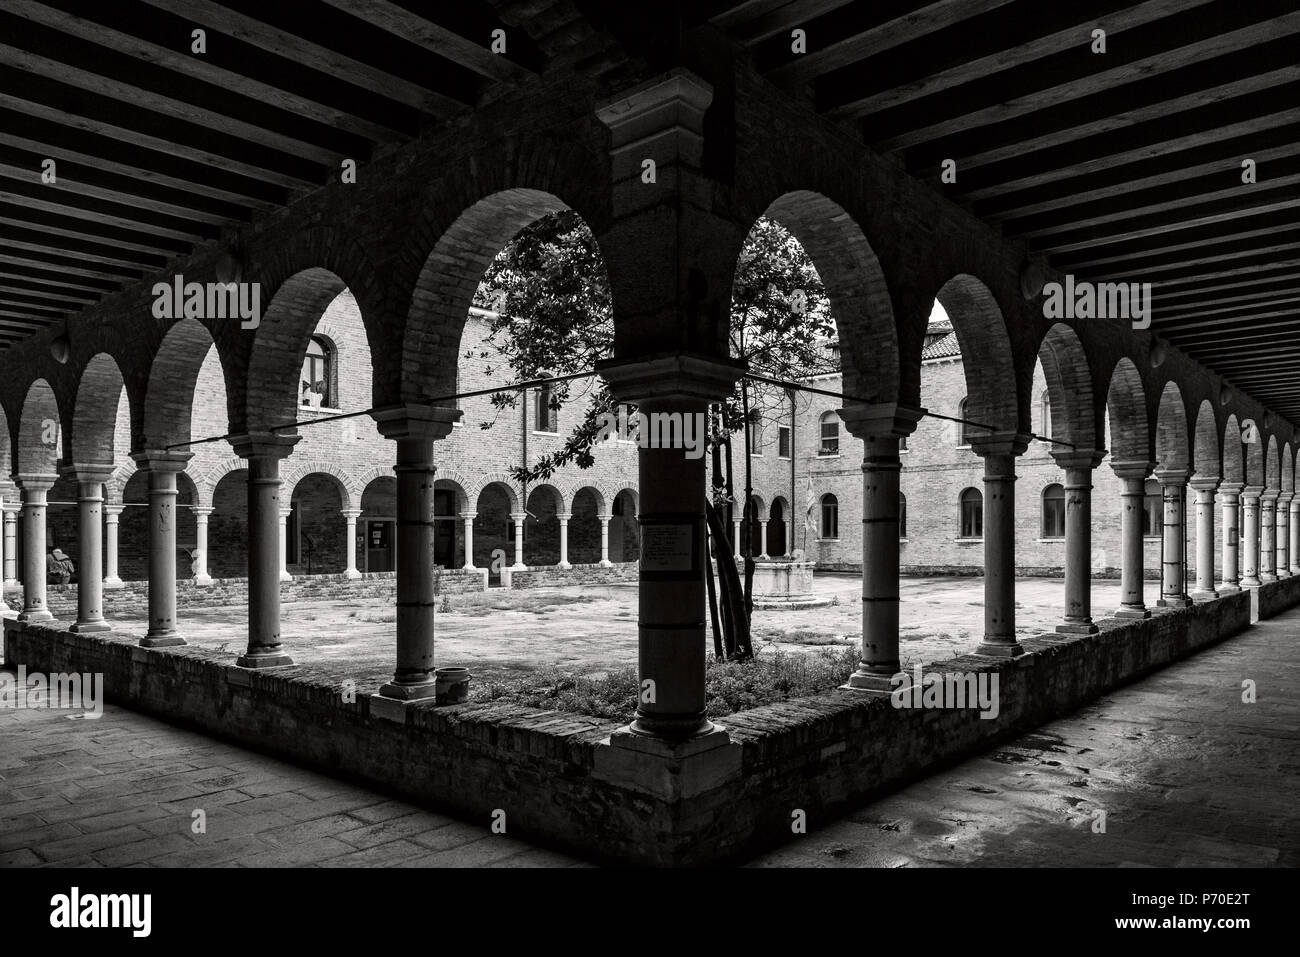 Convento-Santi-Cosma-Giudecca, Venice Italy, taken during the spring. Stock Photo